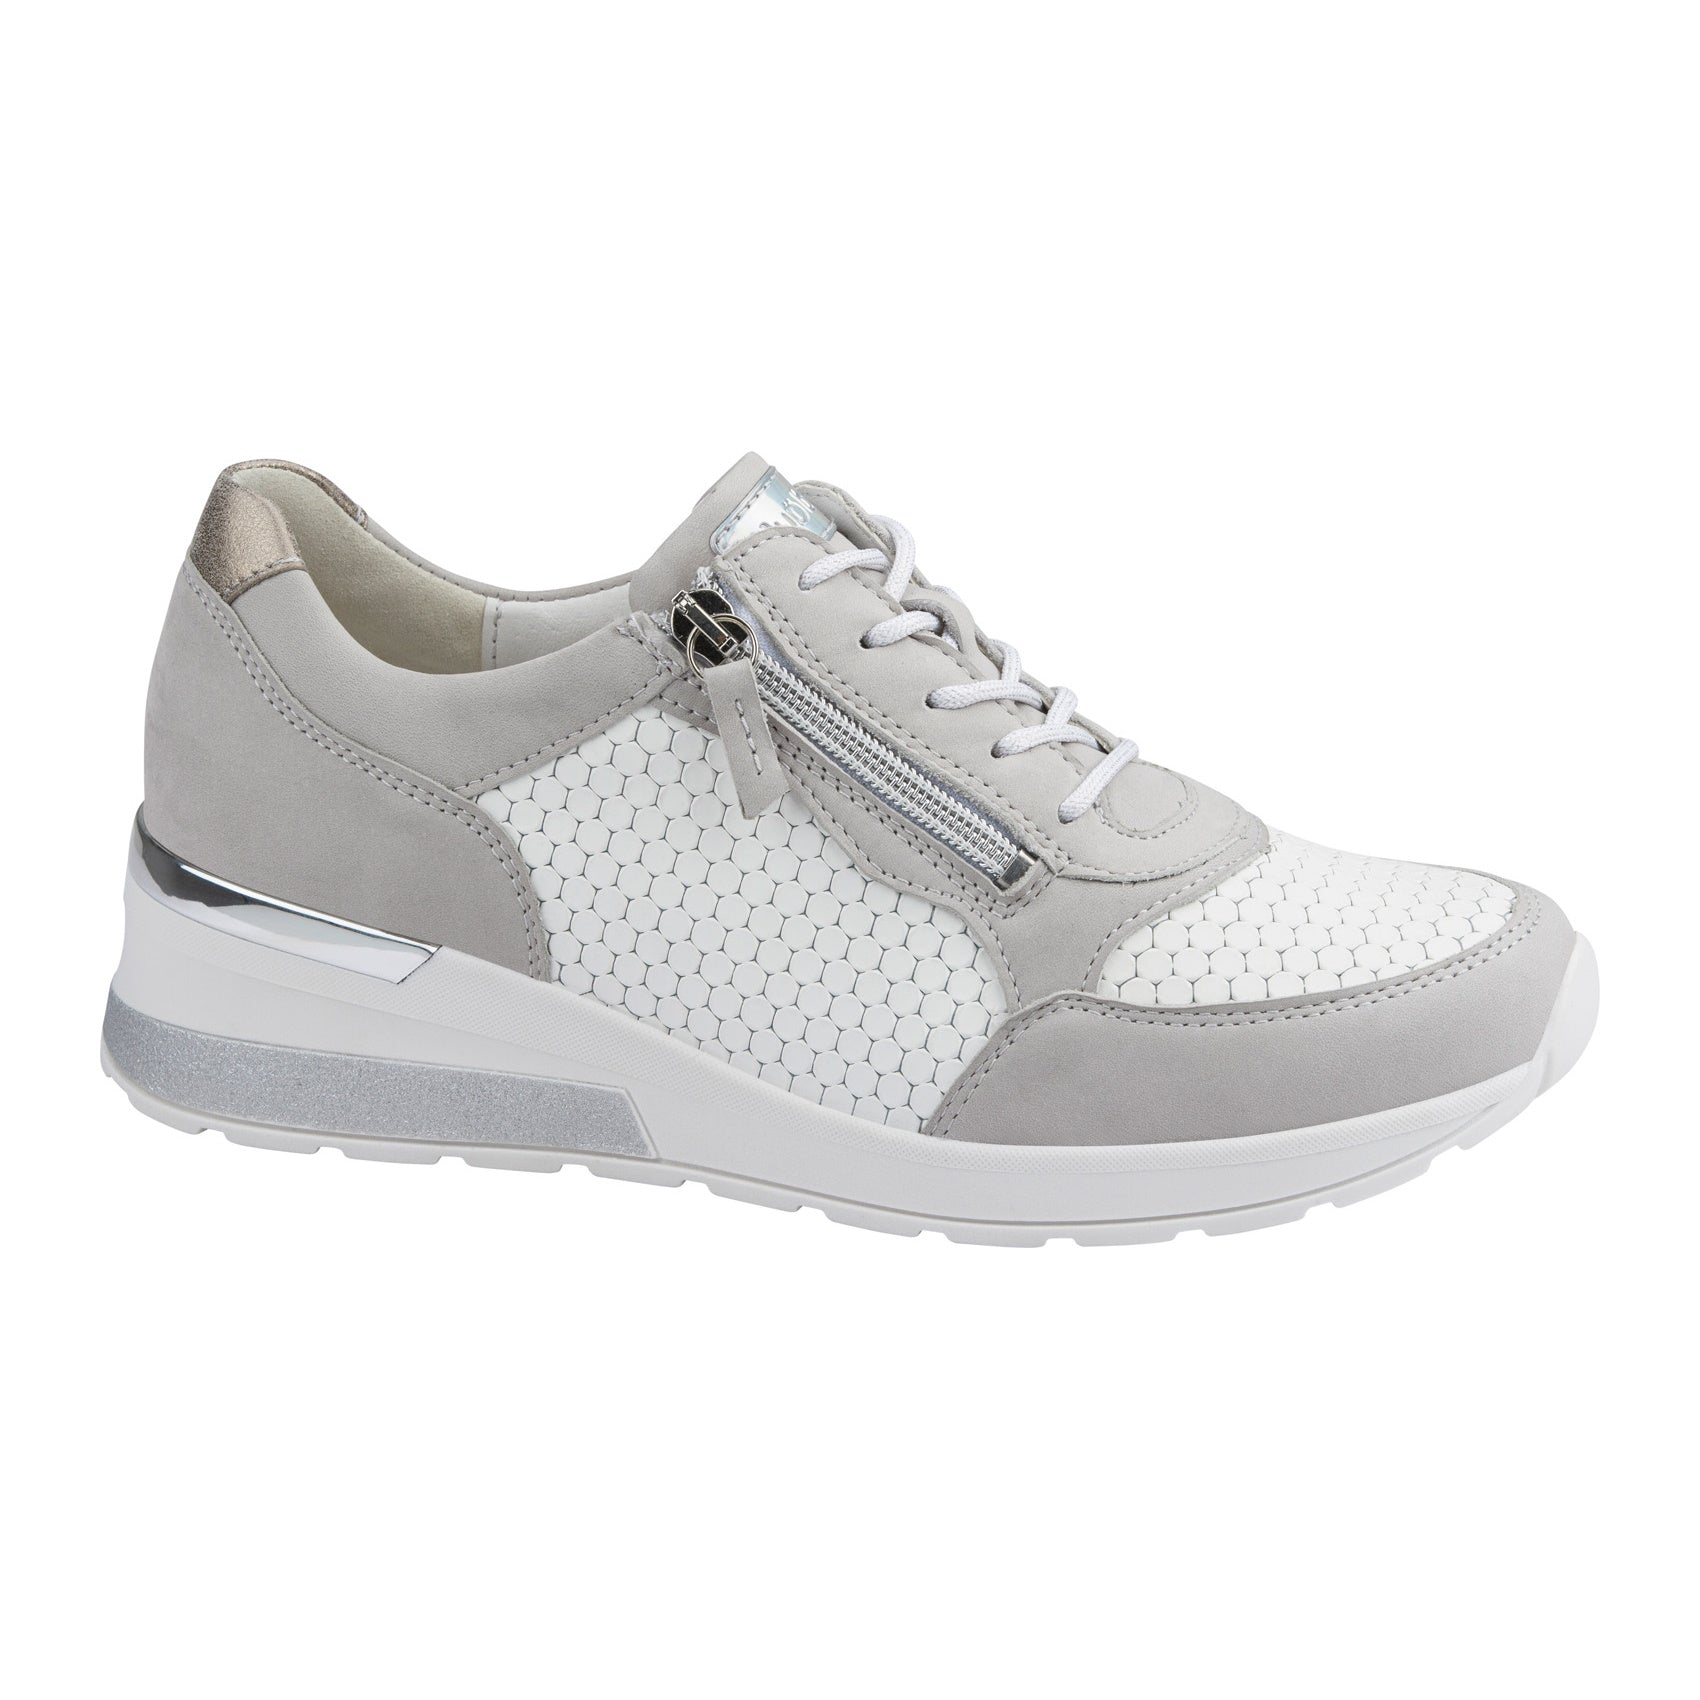 Waldlaufer H-Clara 939015 Women's grey and white wedge heel trainers ...